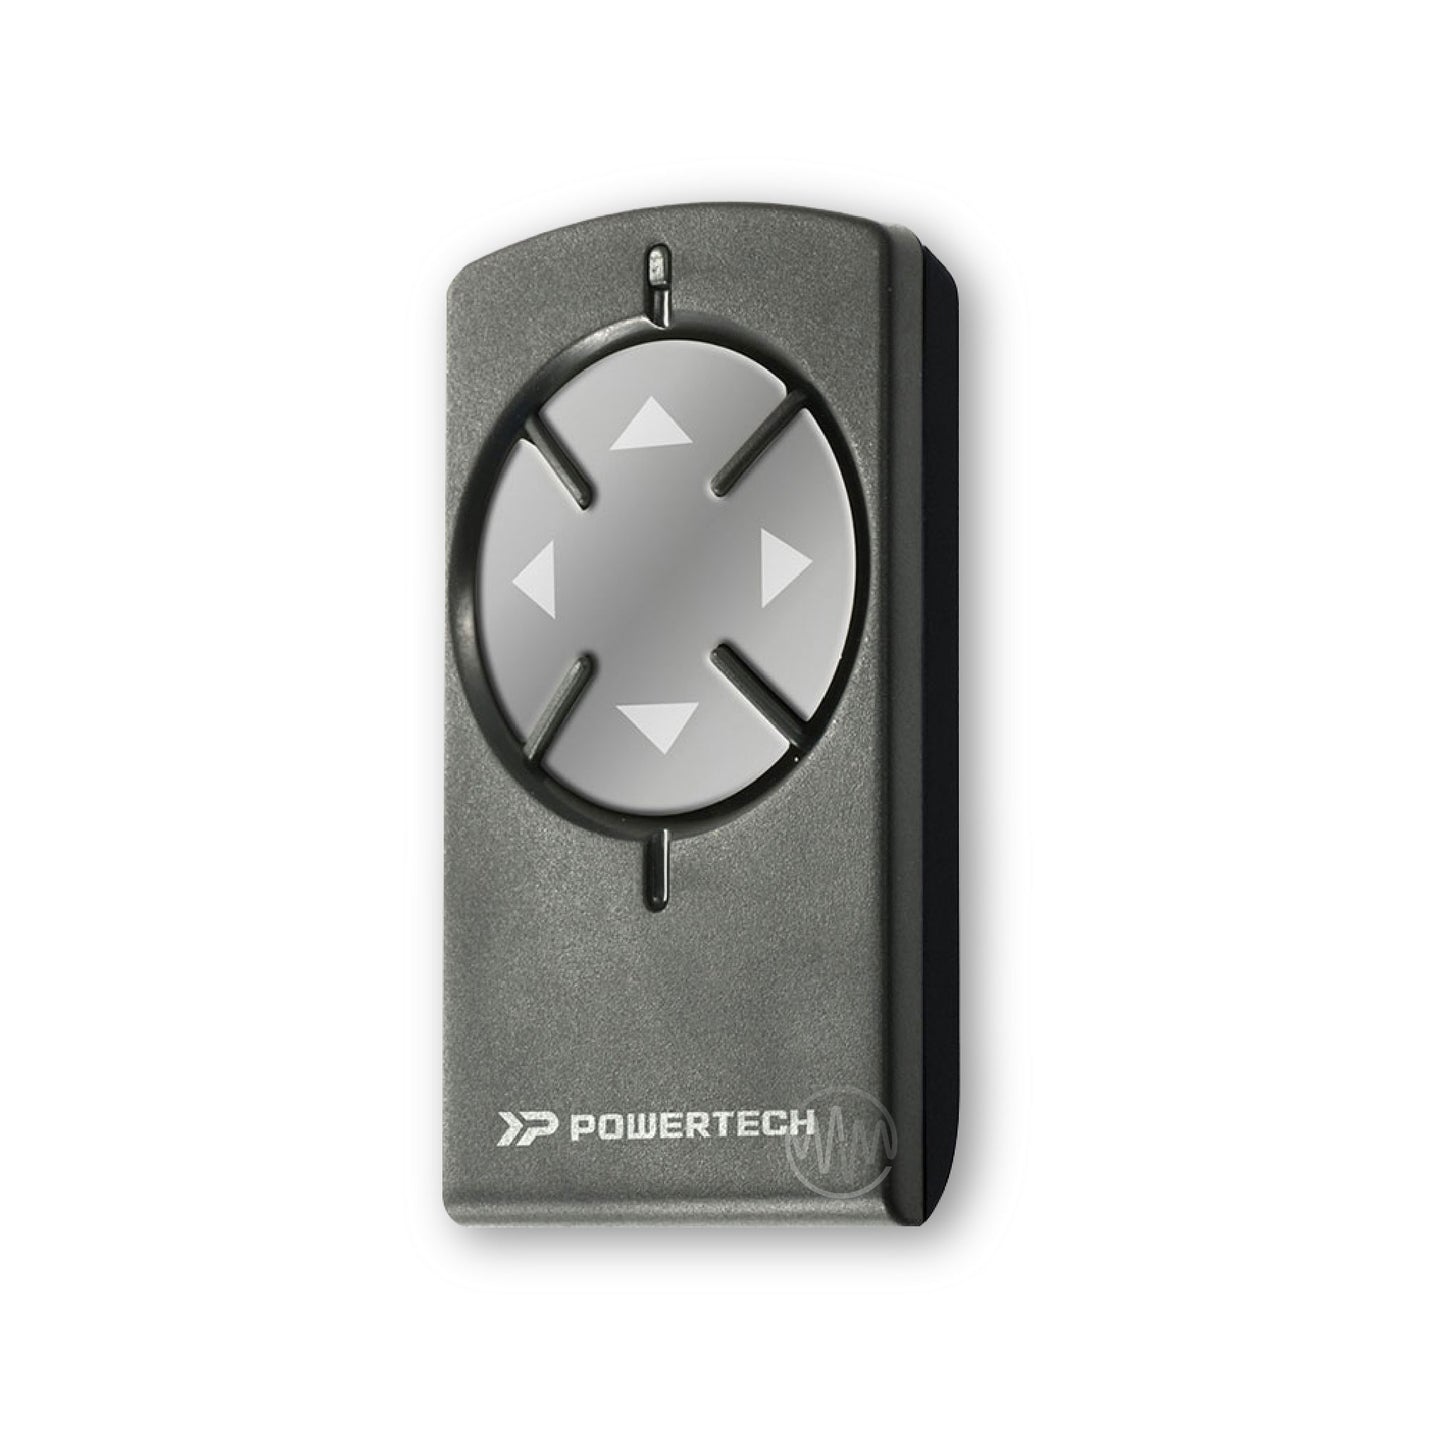 Powertech PR2 Garage & Gate Remote